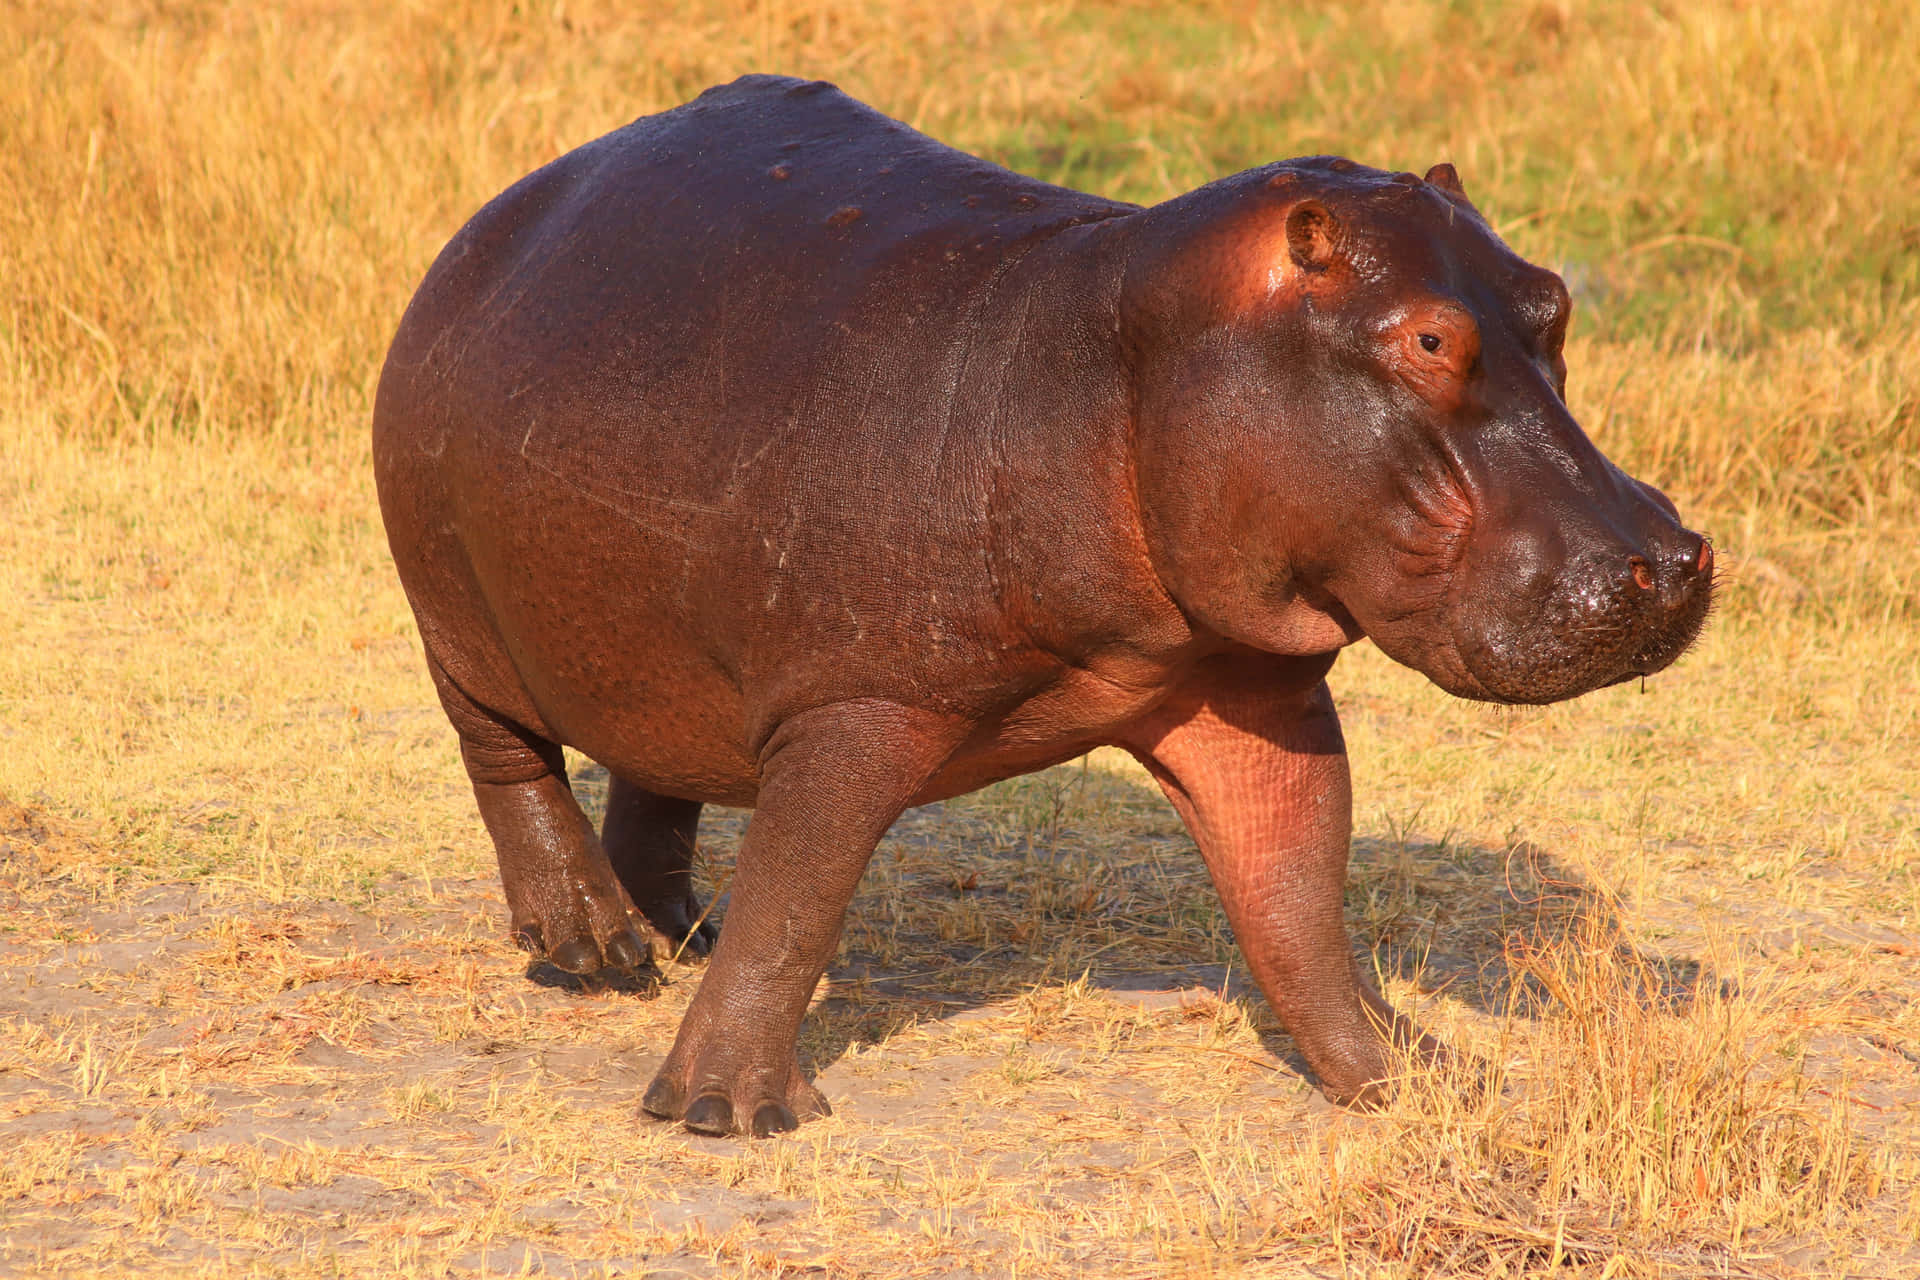 Imagende Un Pequeño Hipopótamo En Un Campo